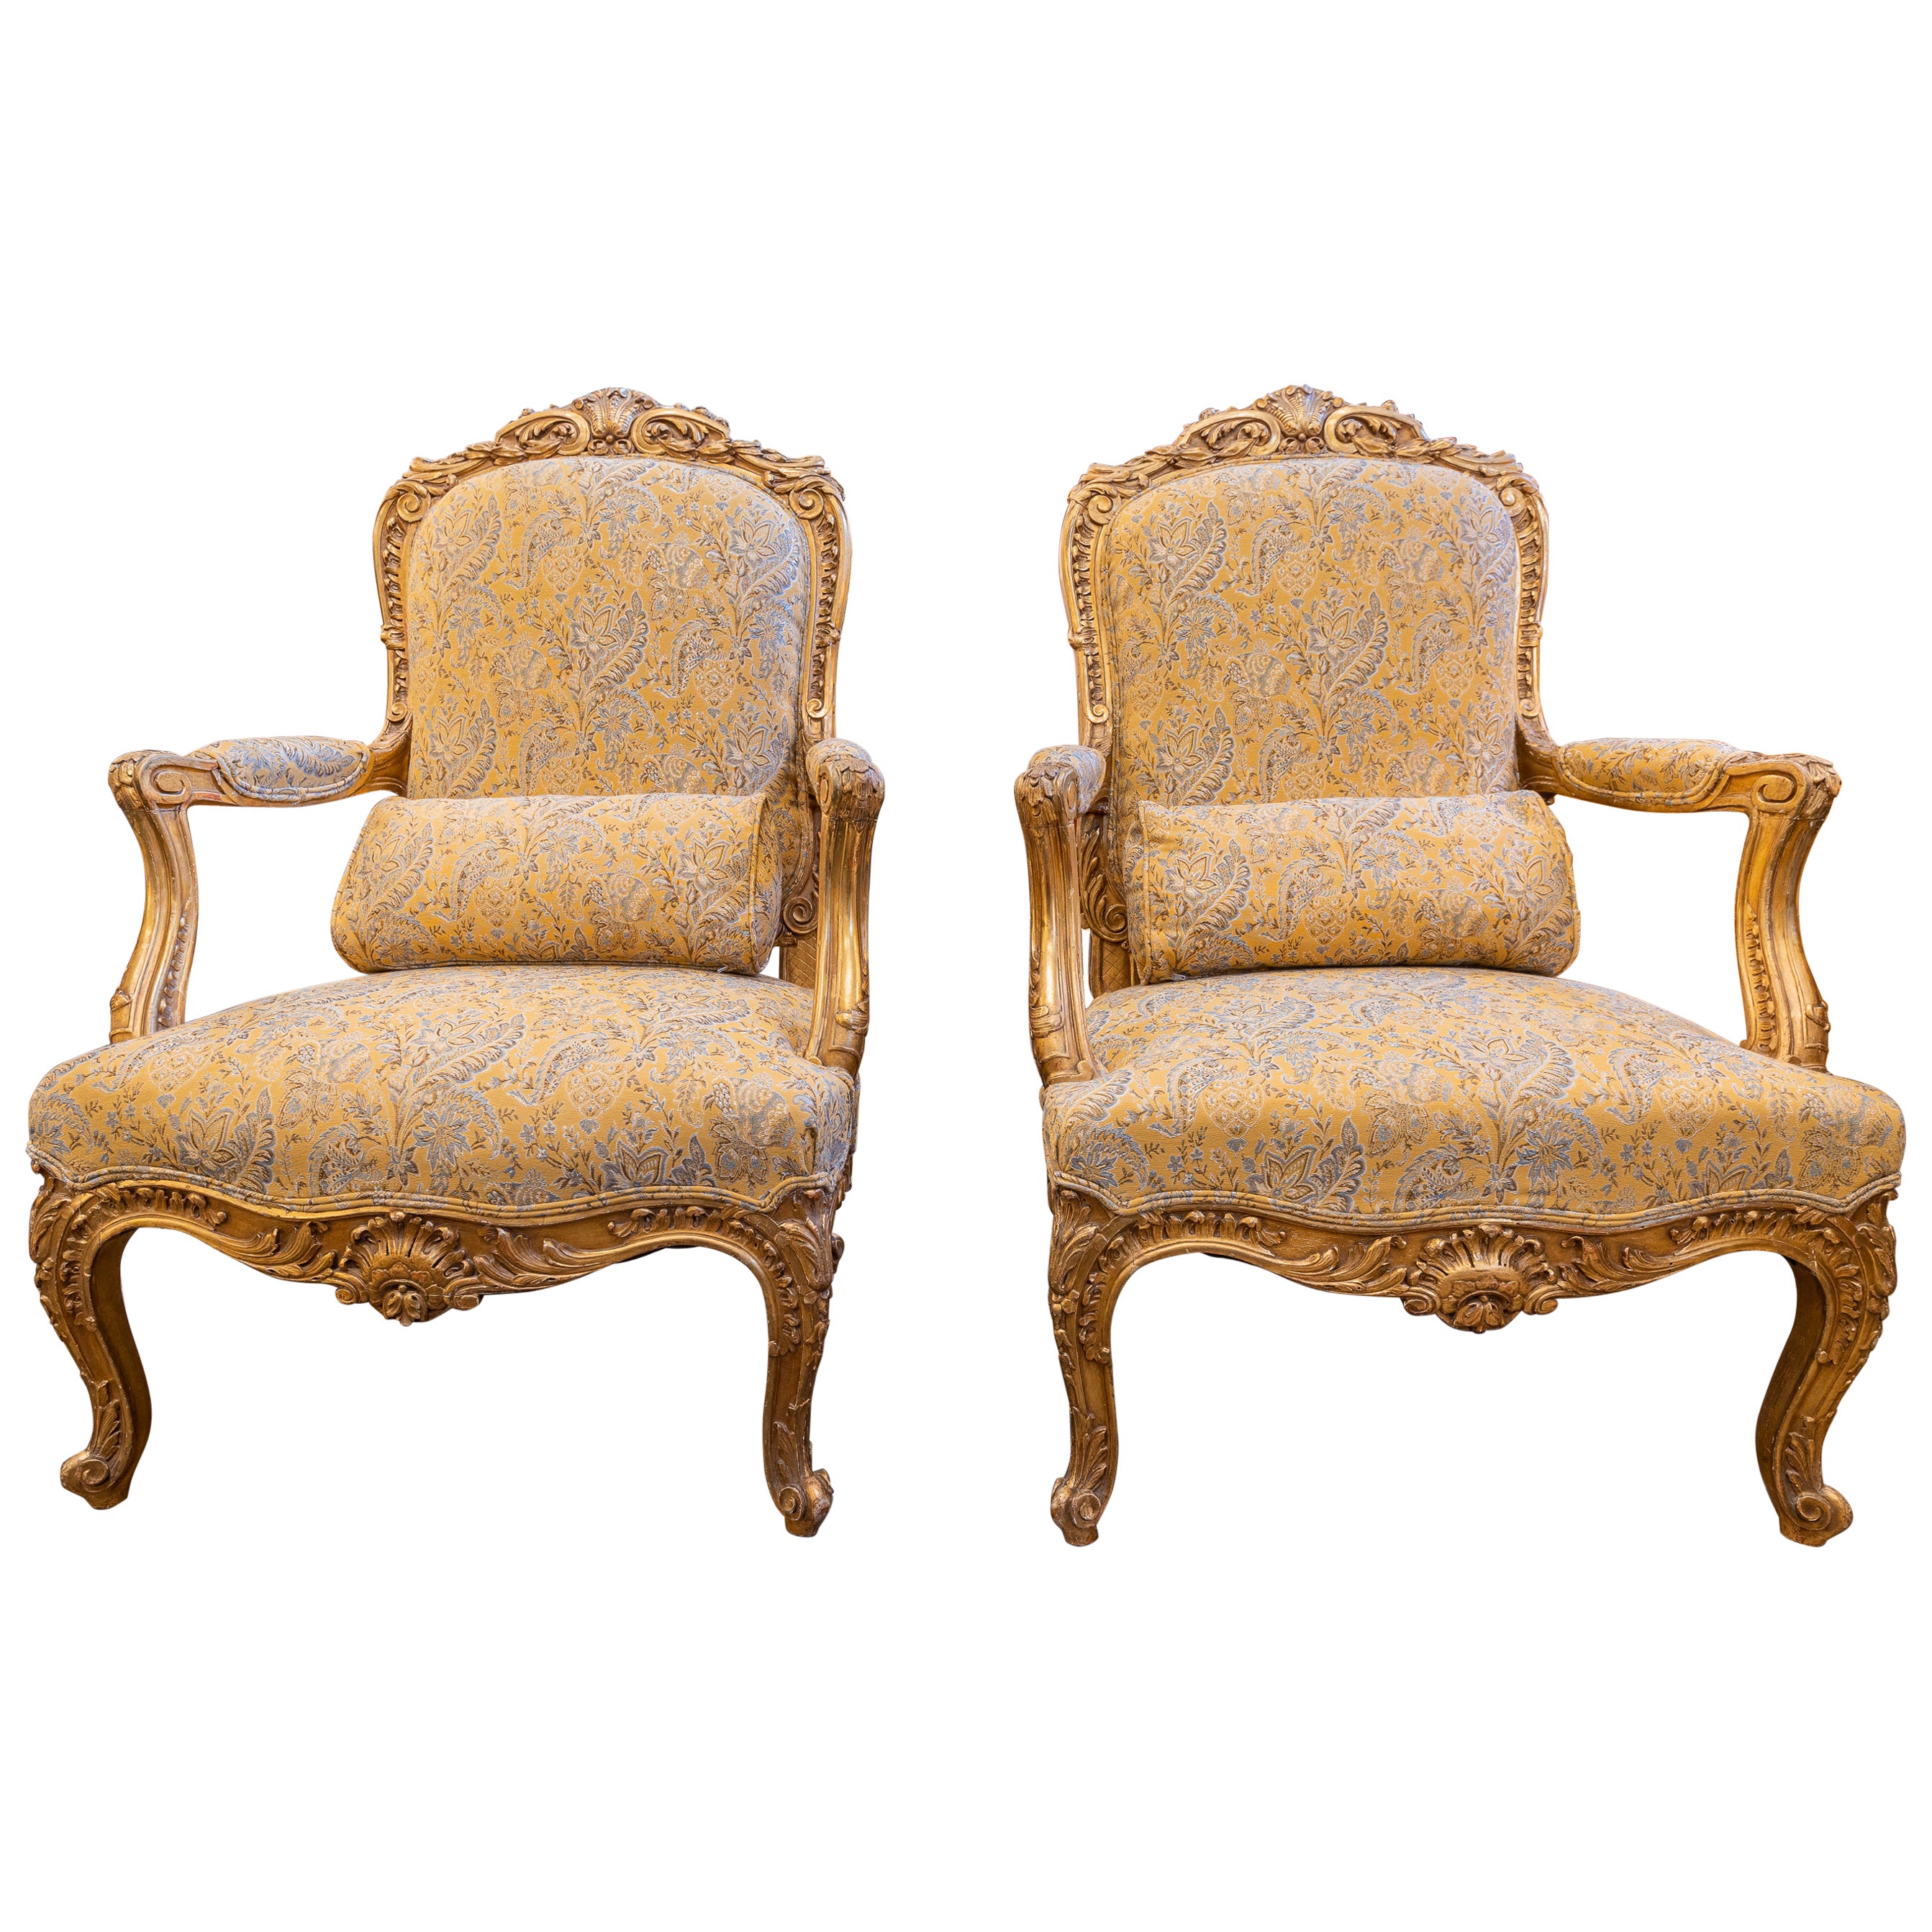 Une belle grande paire de fauteuils Louis XV sculptés et dorés du 19ème siècle